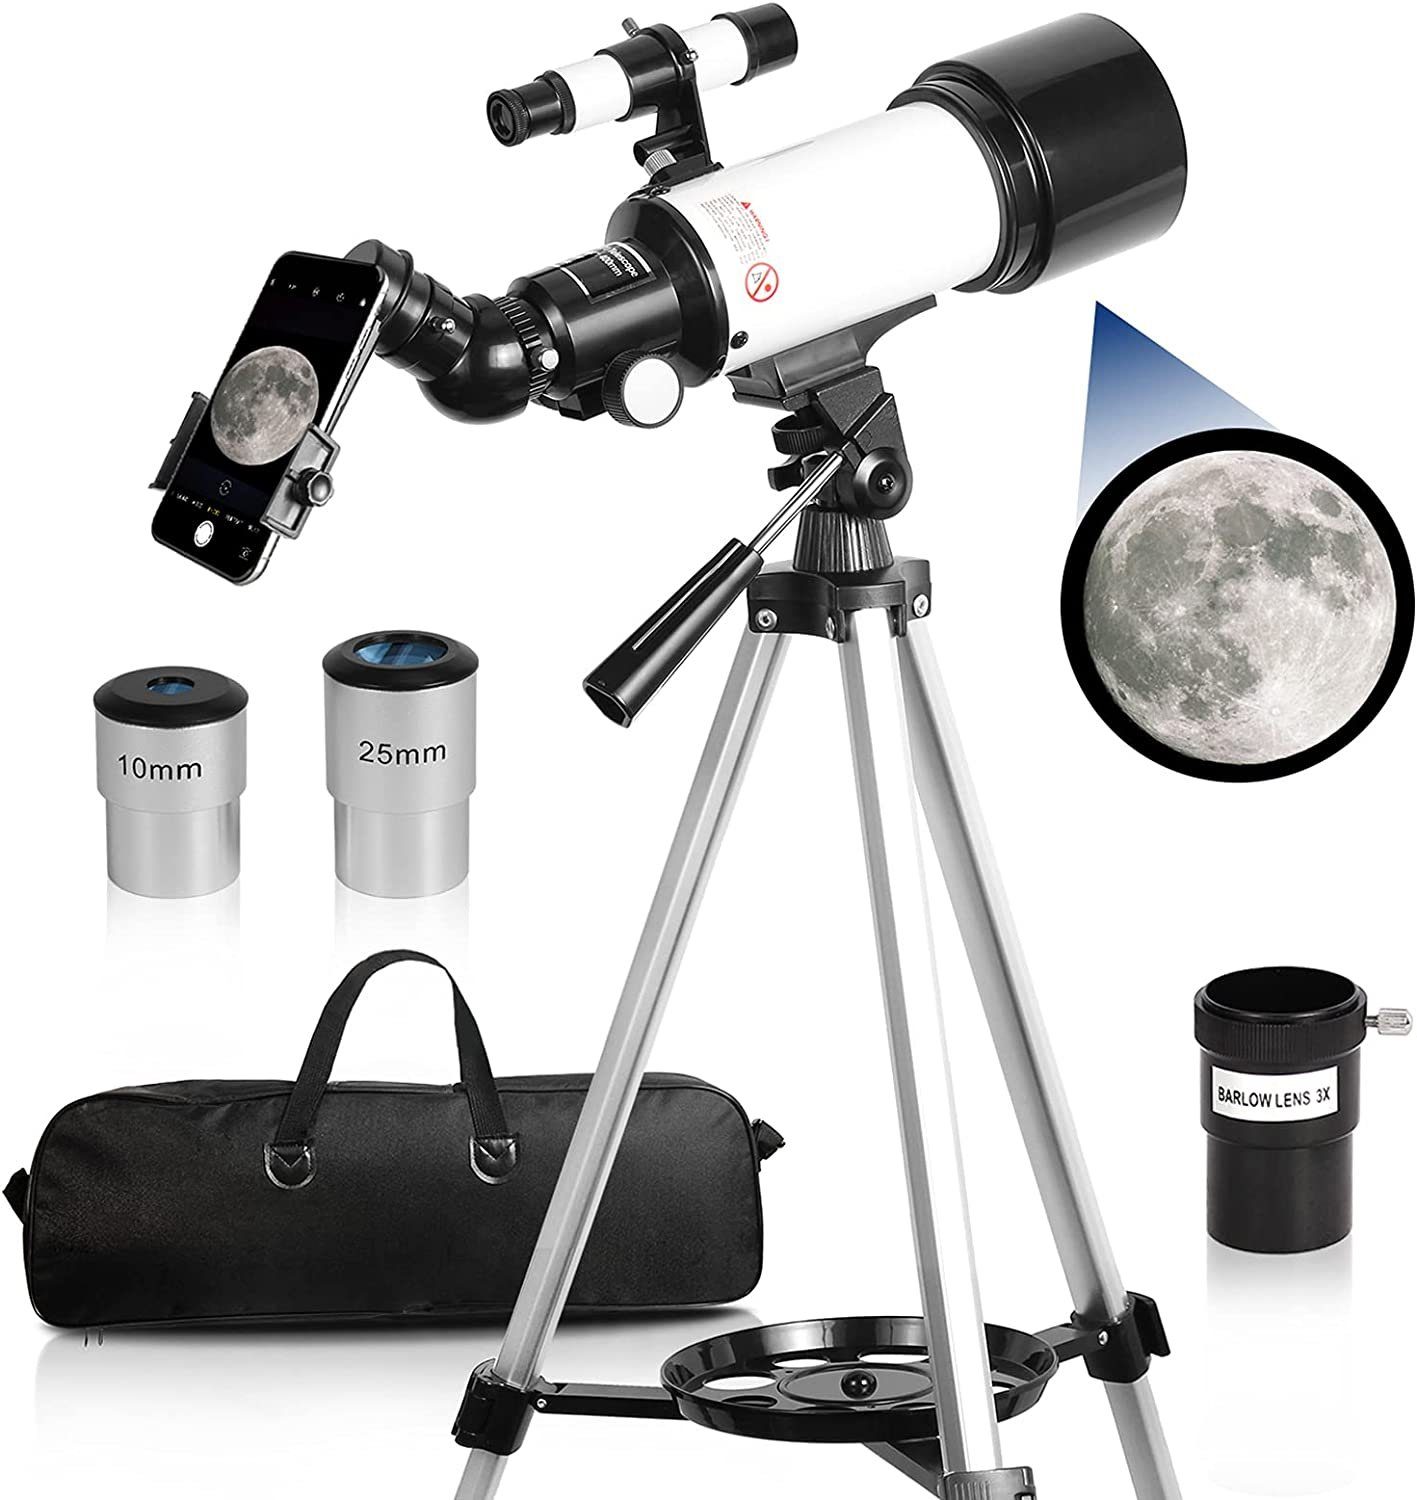 AKKEE Teleskop Teleskope für Kinder und Einsteiger, 70 mm Blende, Teleskop Astronomie Erwachsene Teleskop mit Stativ, Handy-Adapter